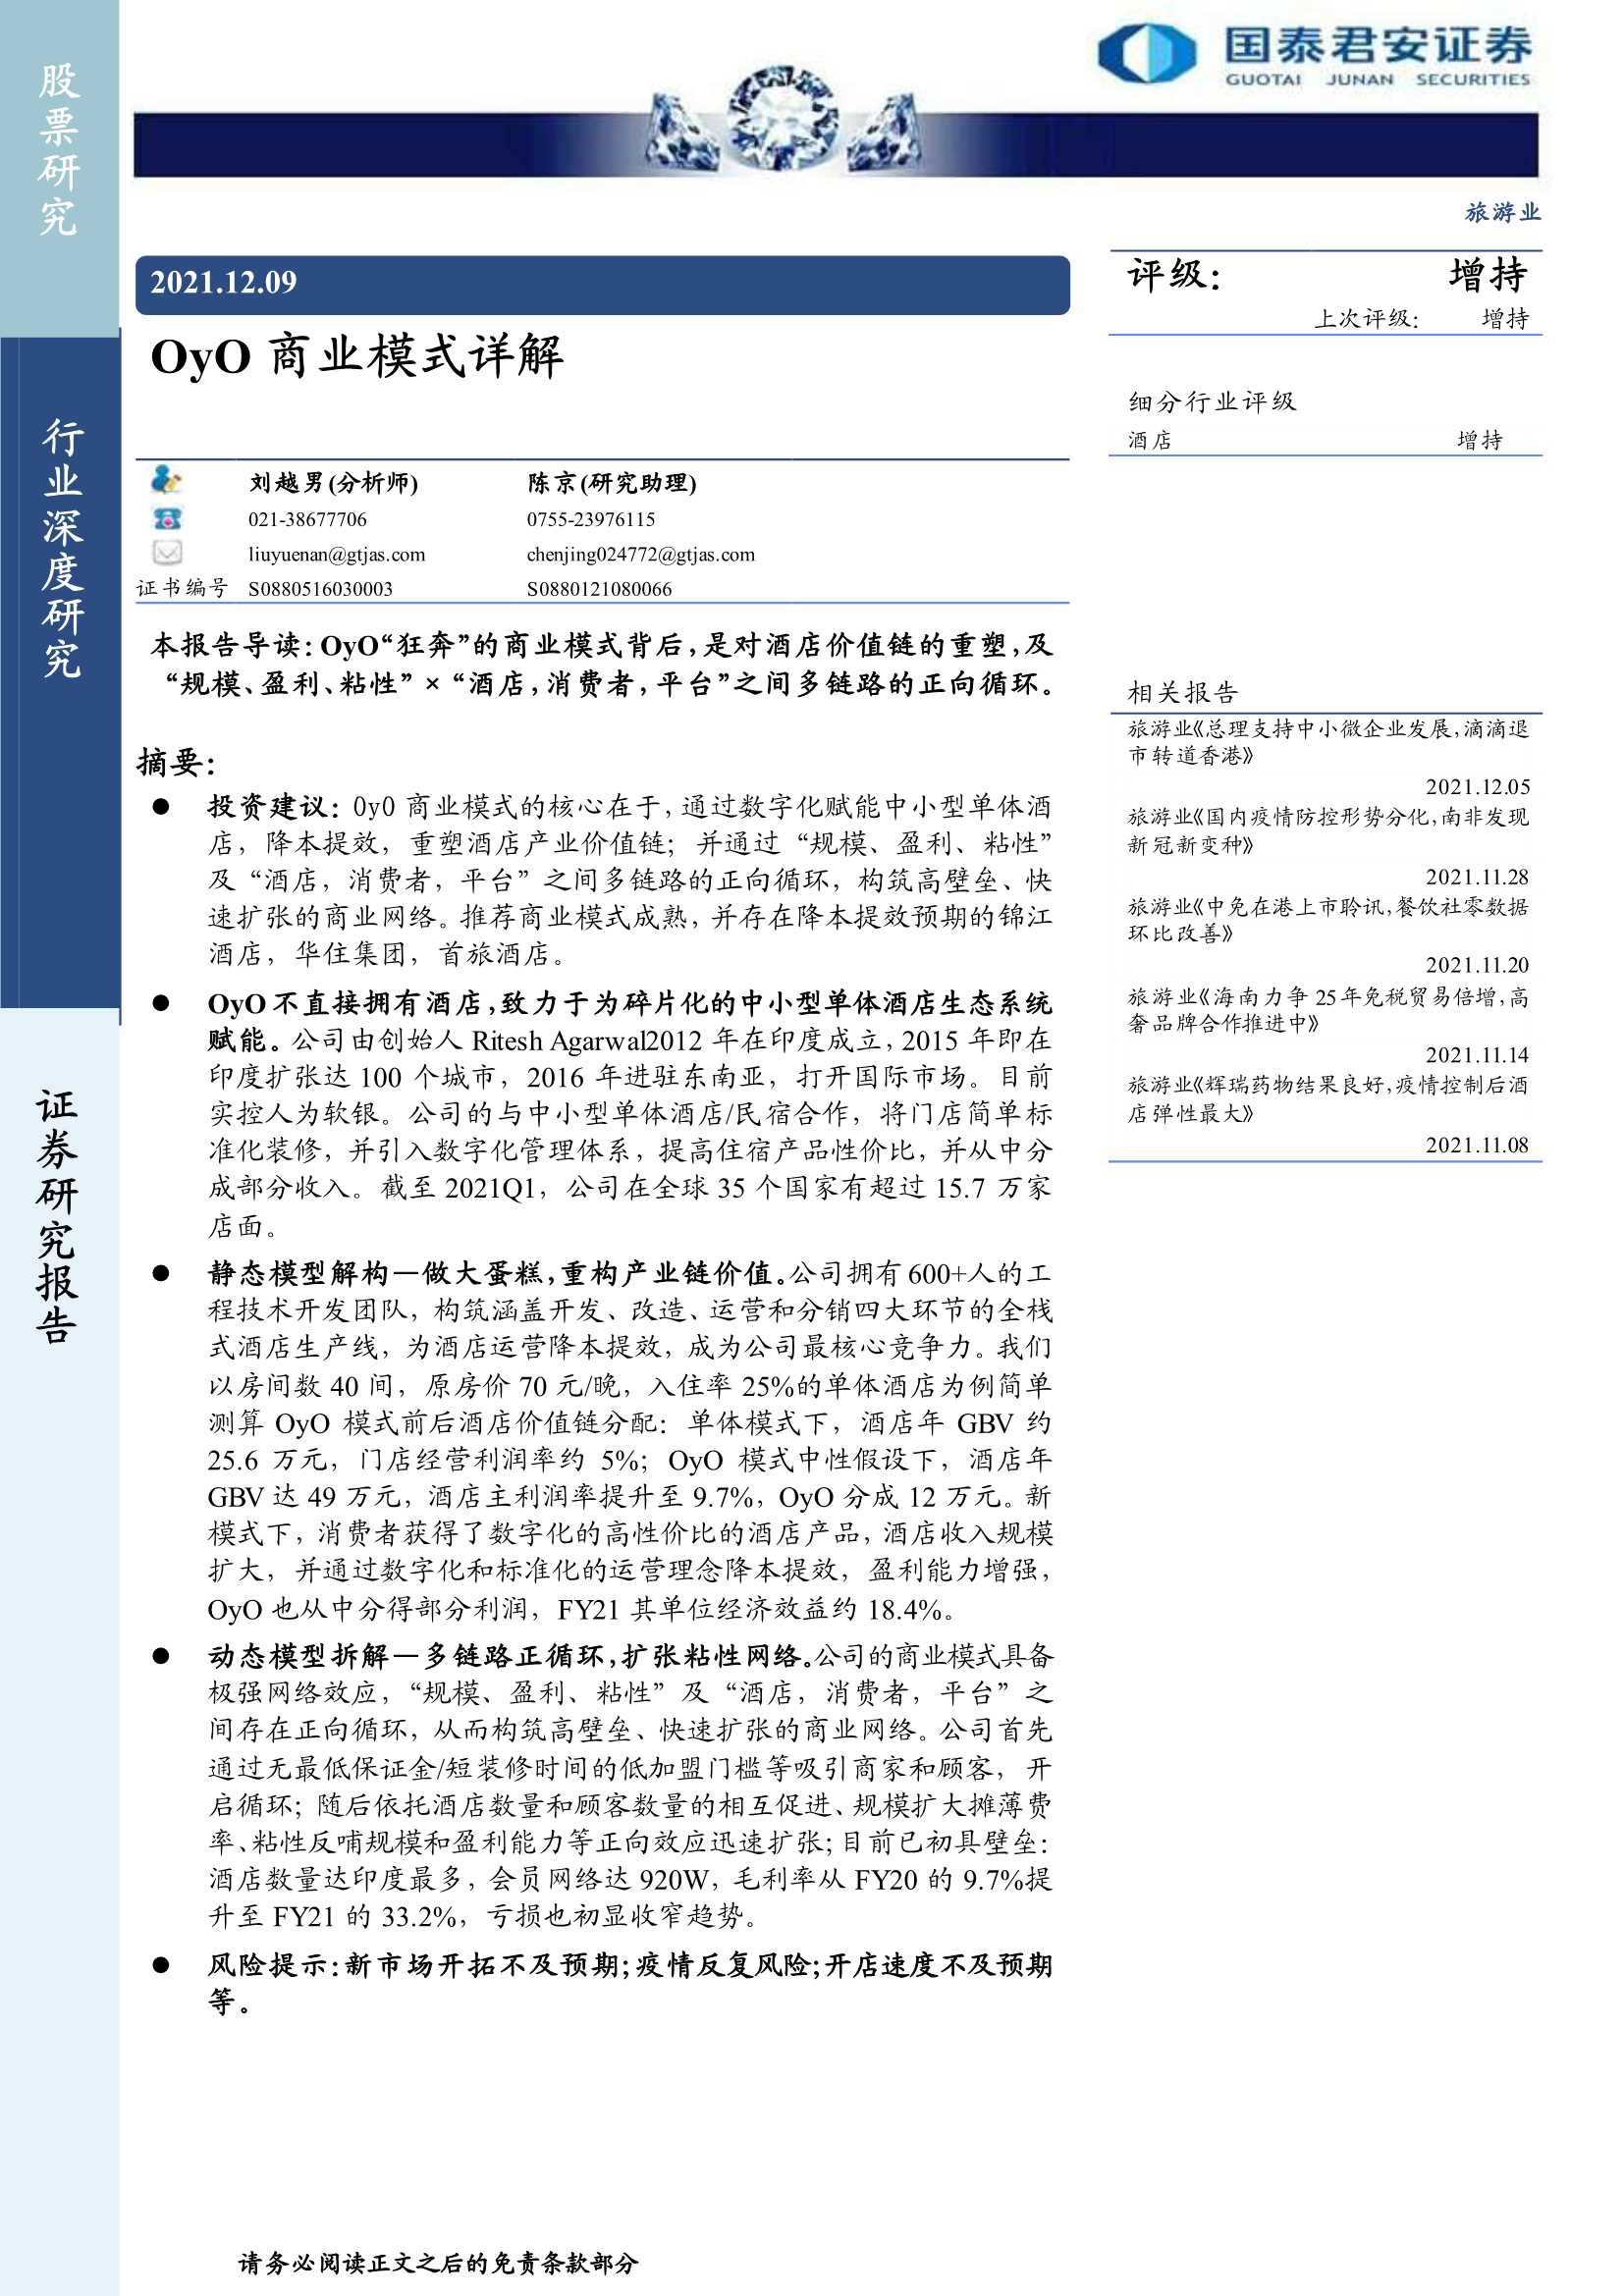 国泰君安-旅游行业：OyO商业模式详解-20211209-27页